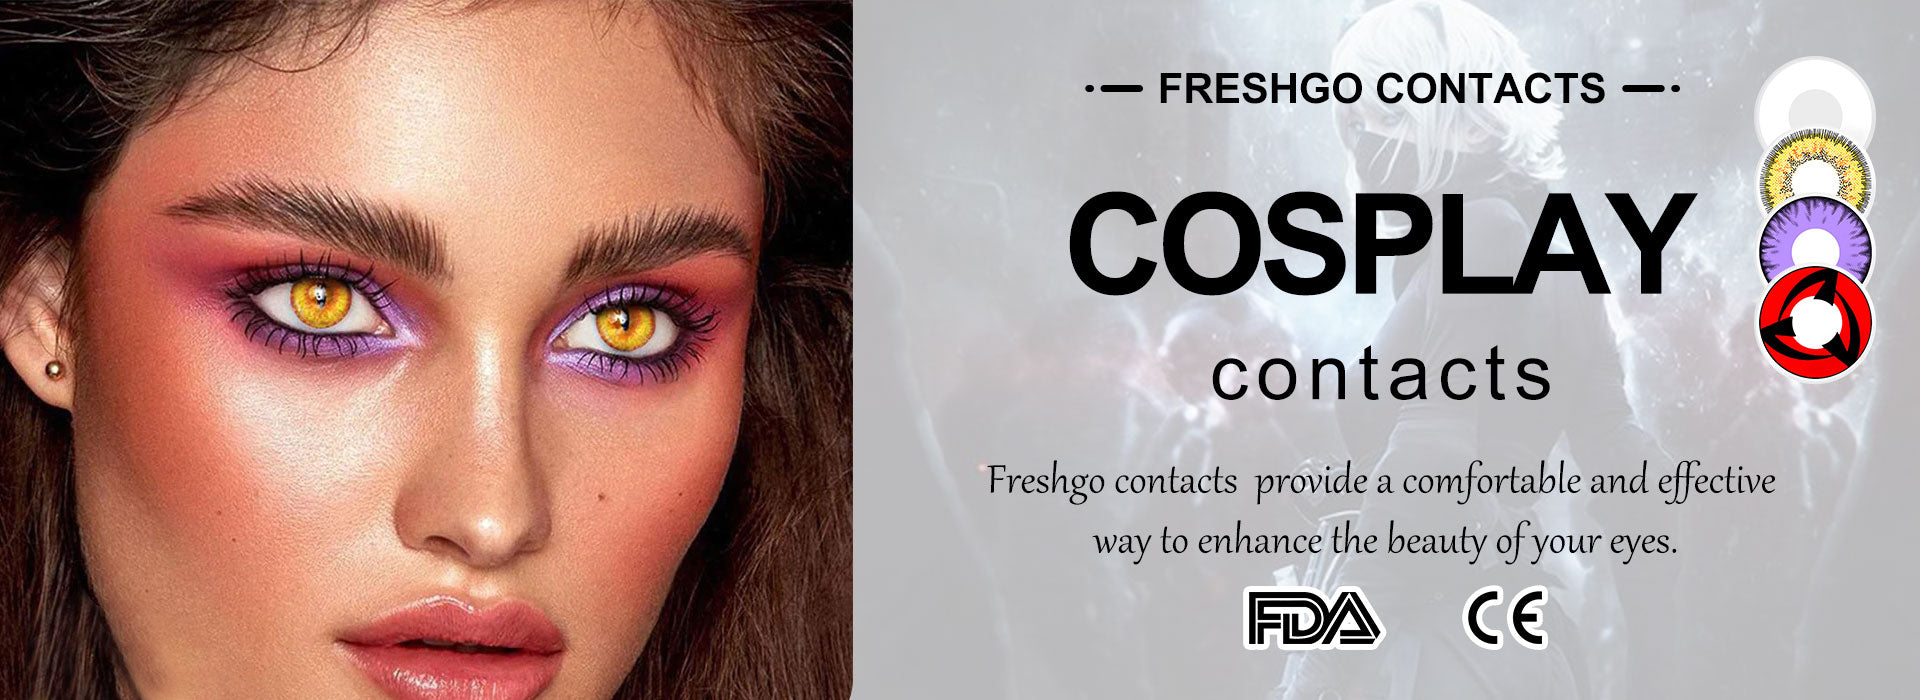 Cosplay Contact Lenses Non Prescription Contacts - FreshGo